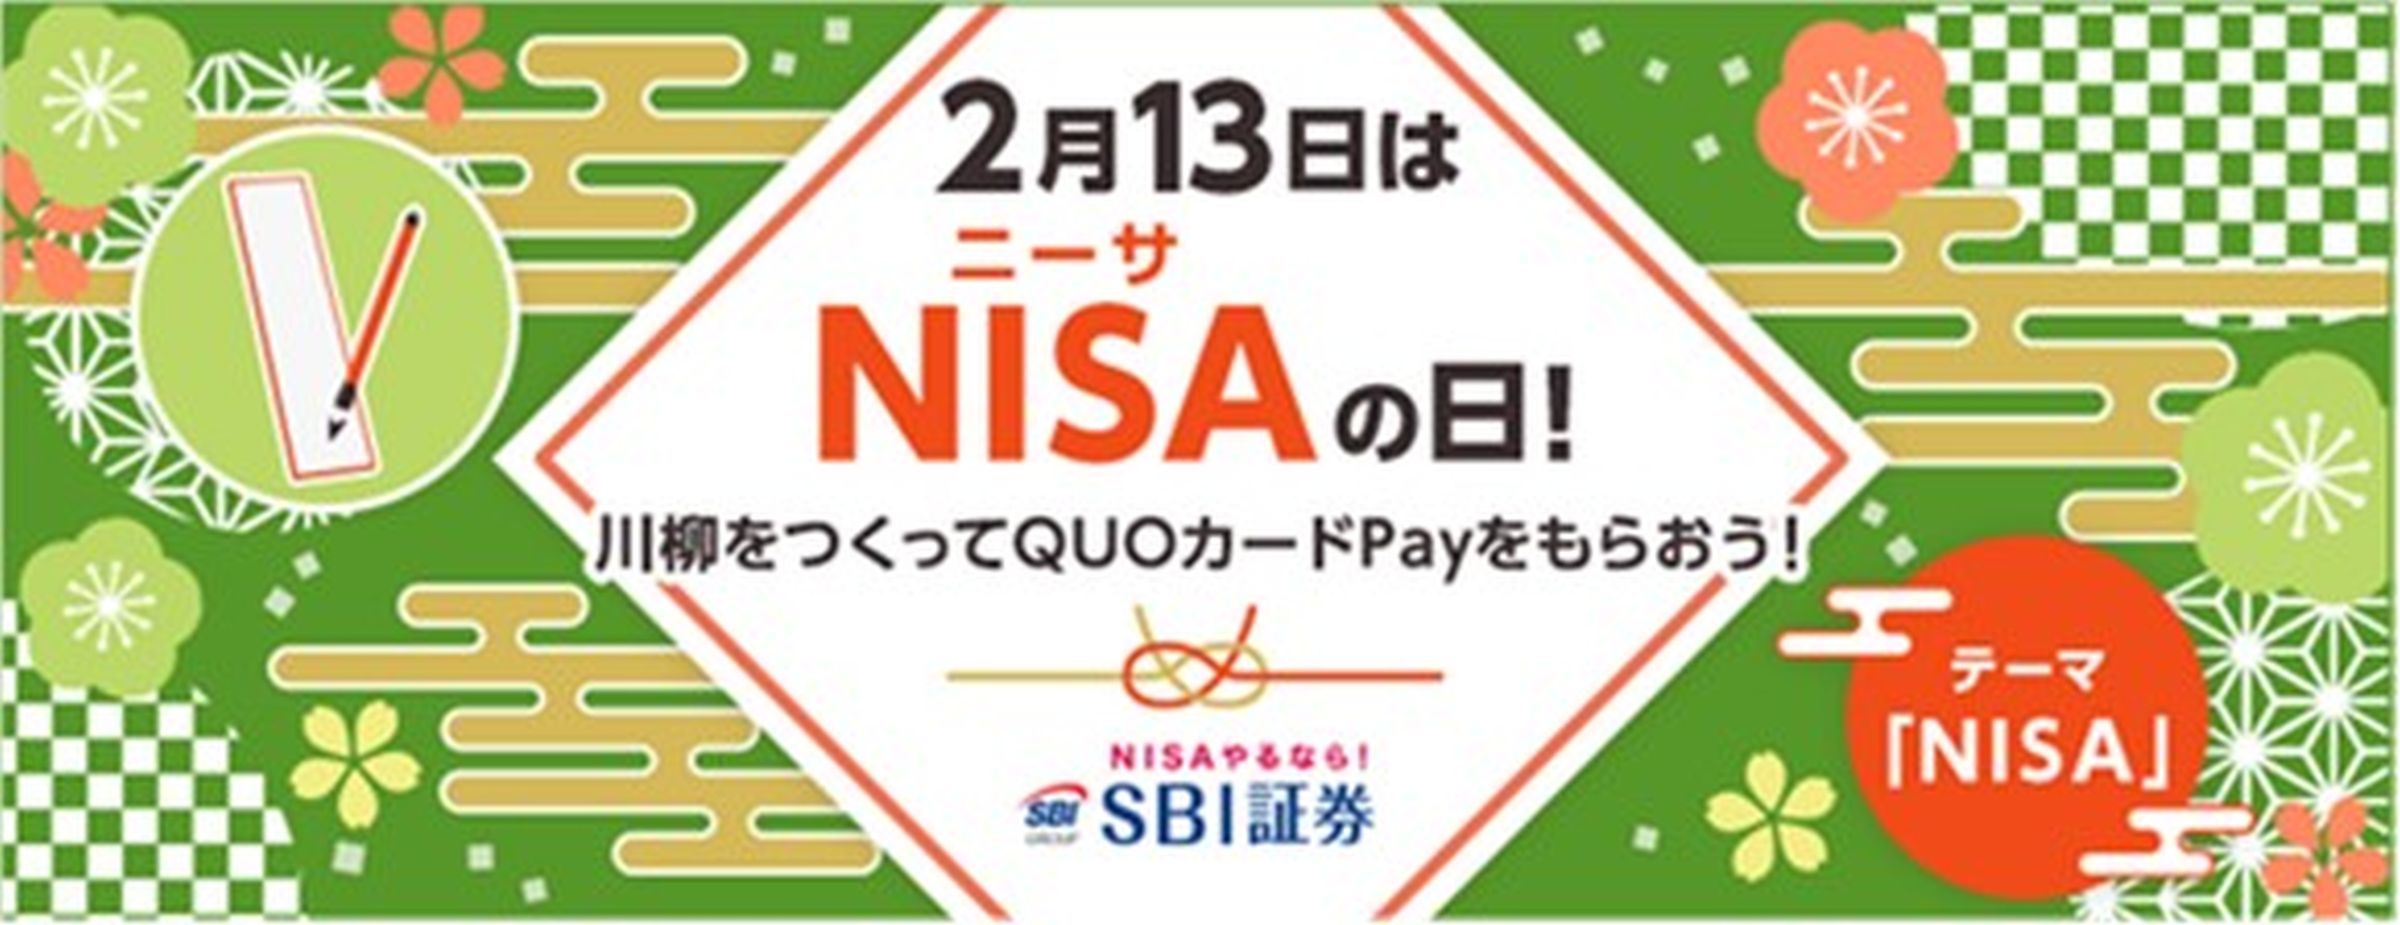 SBI証券、「NISAの日」の川柳を作るとQUOカードPayを獲得できるキャンペーン実施